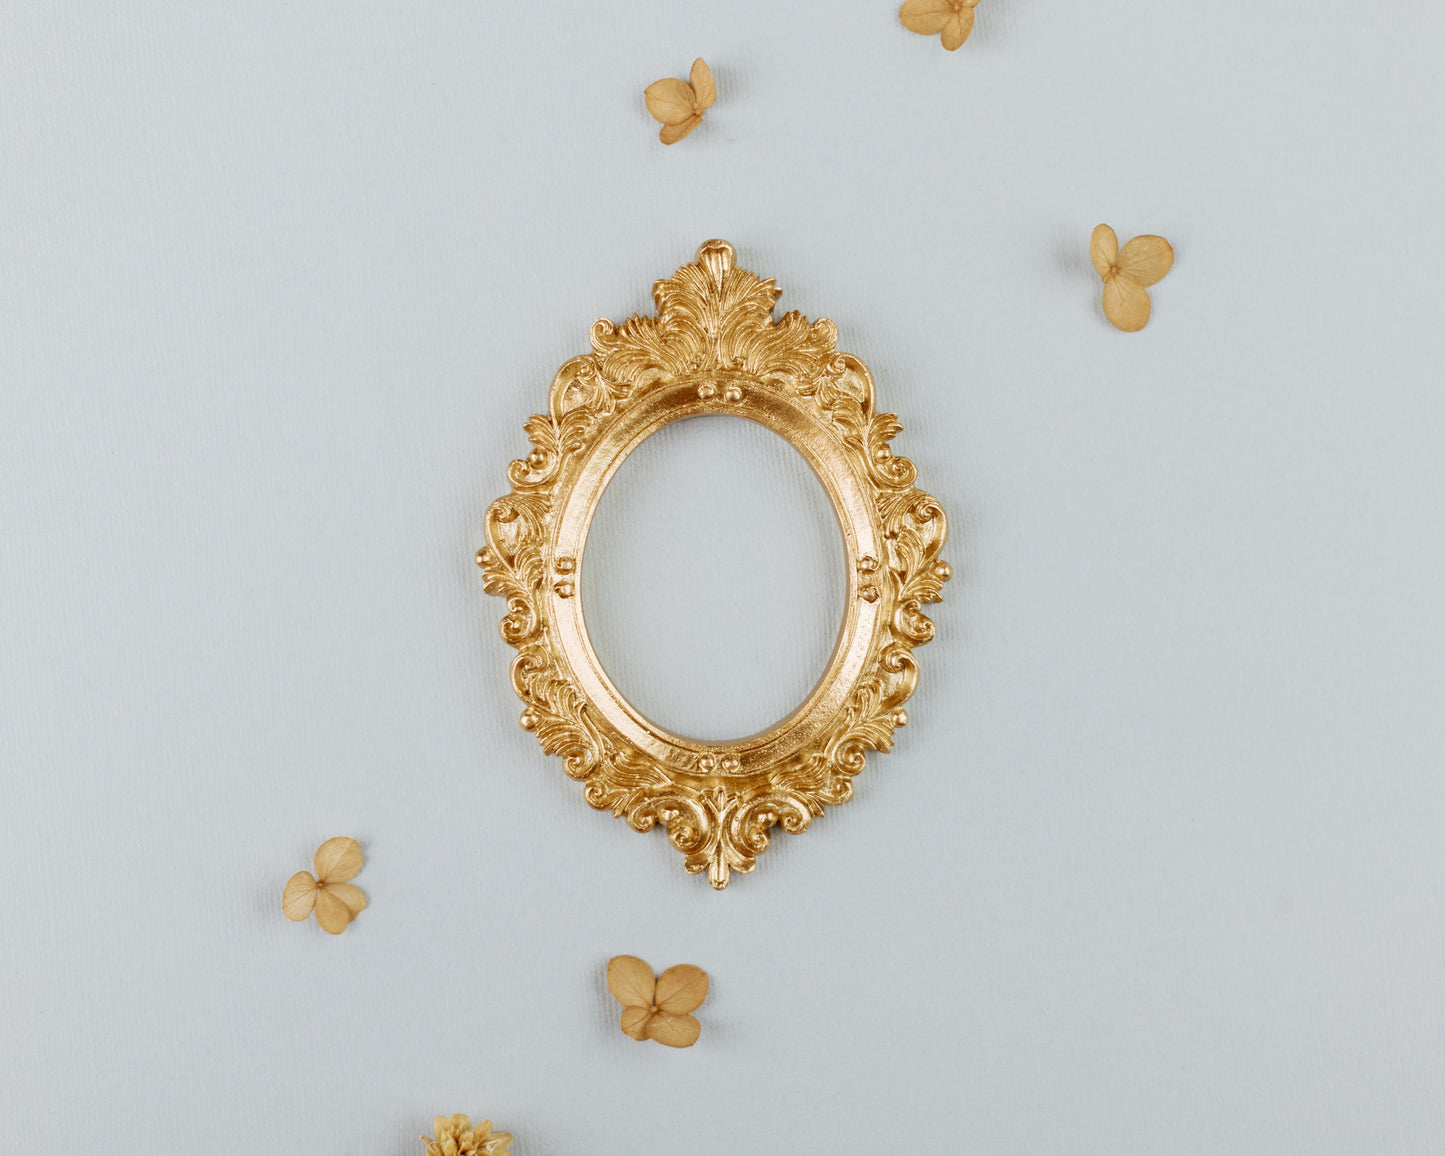 Vintage Style Oval Gold Frame